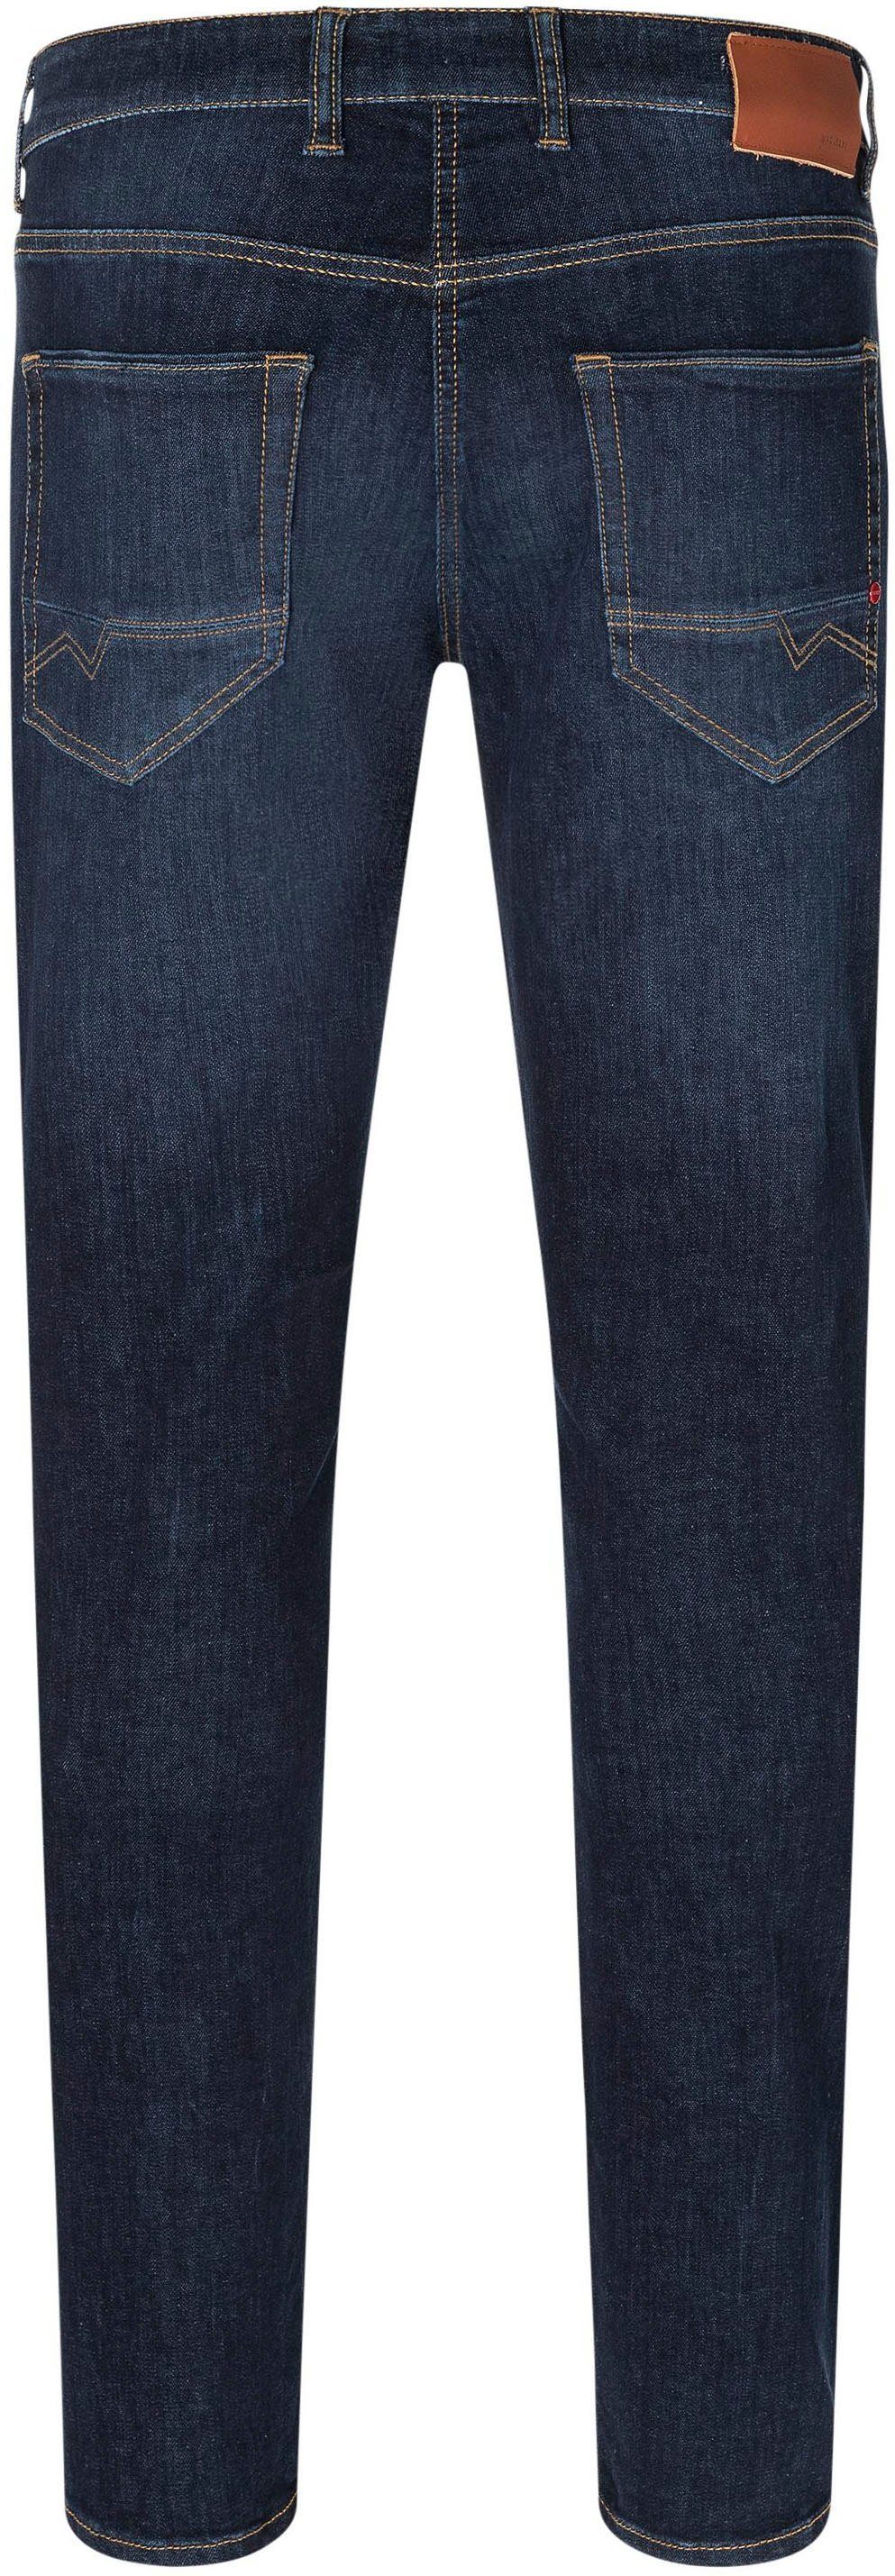 MAC Straight-Jeans Arne dark used Pipe blue